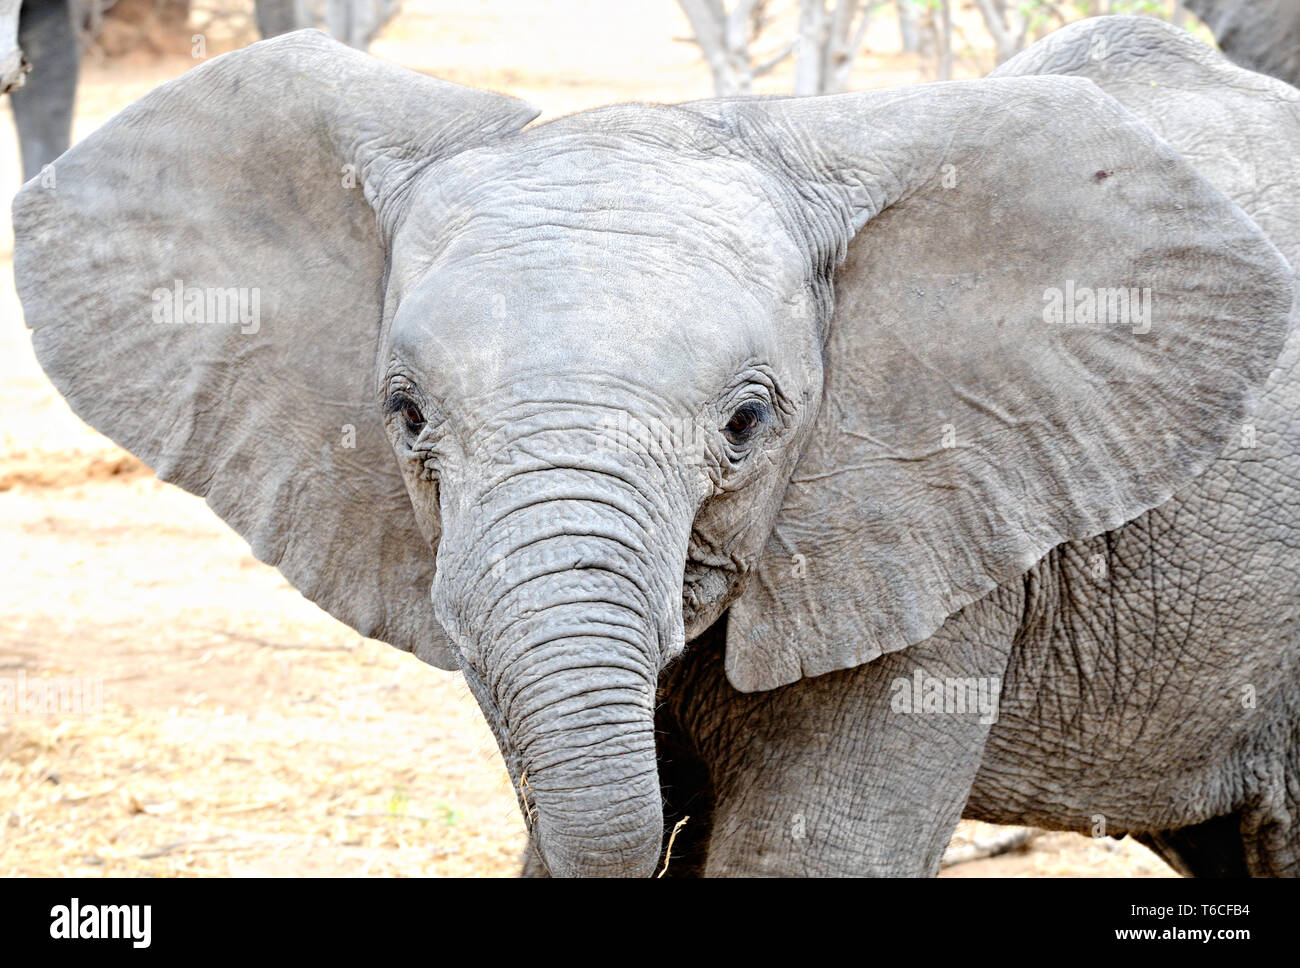 little elephant with big ears Stock Photo